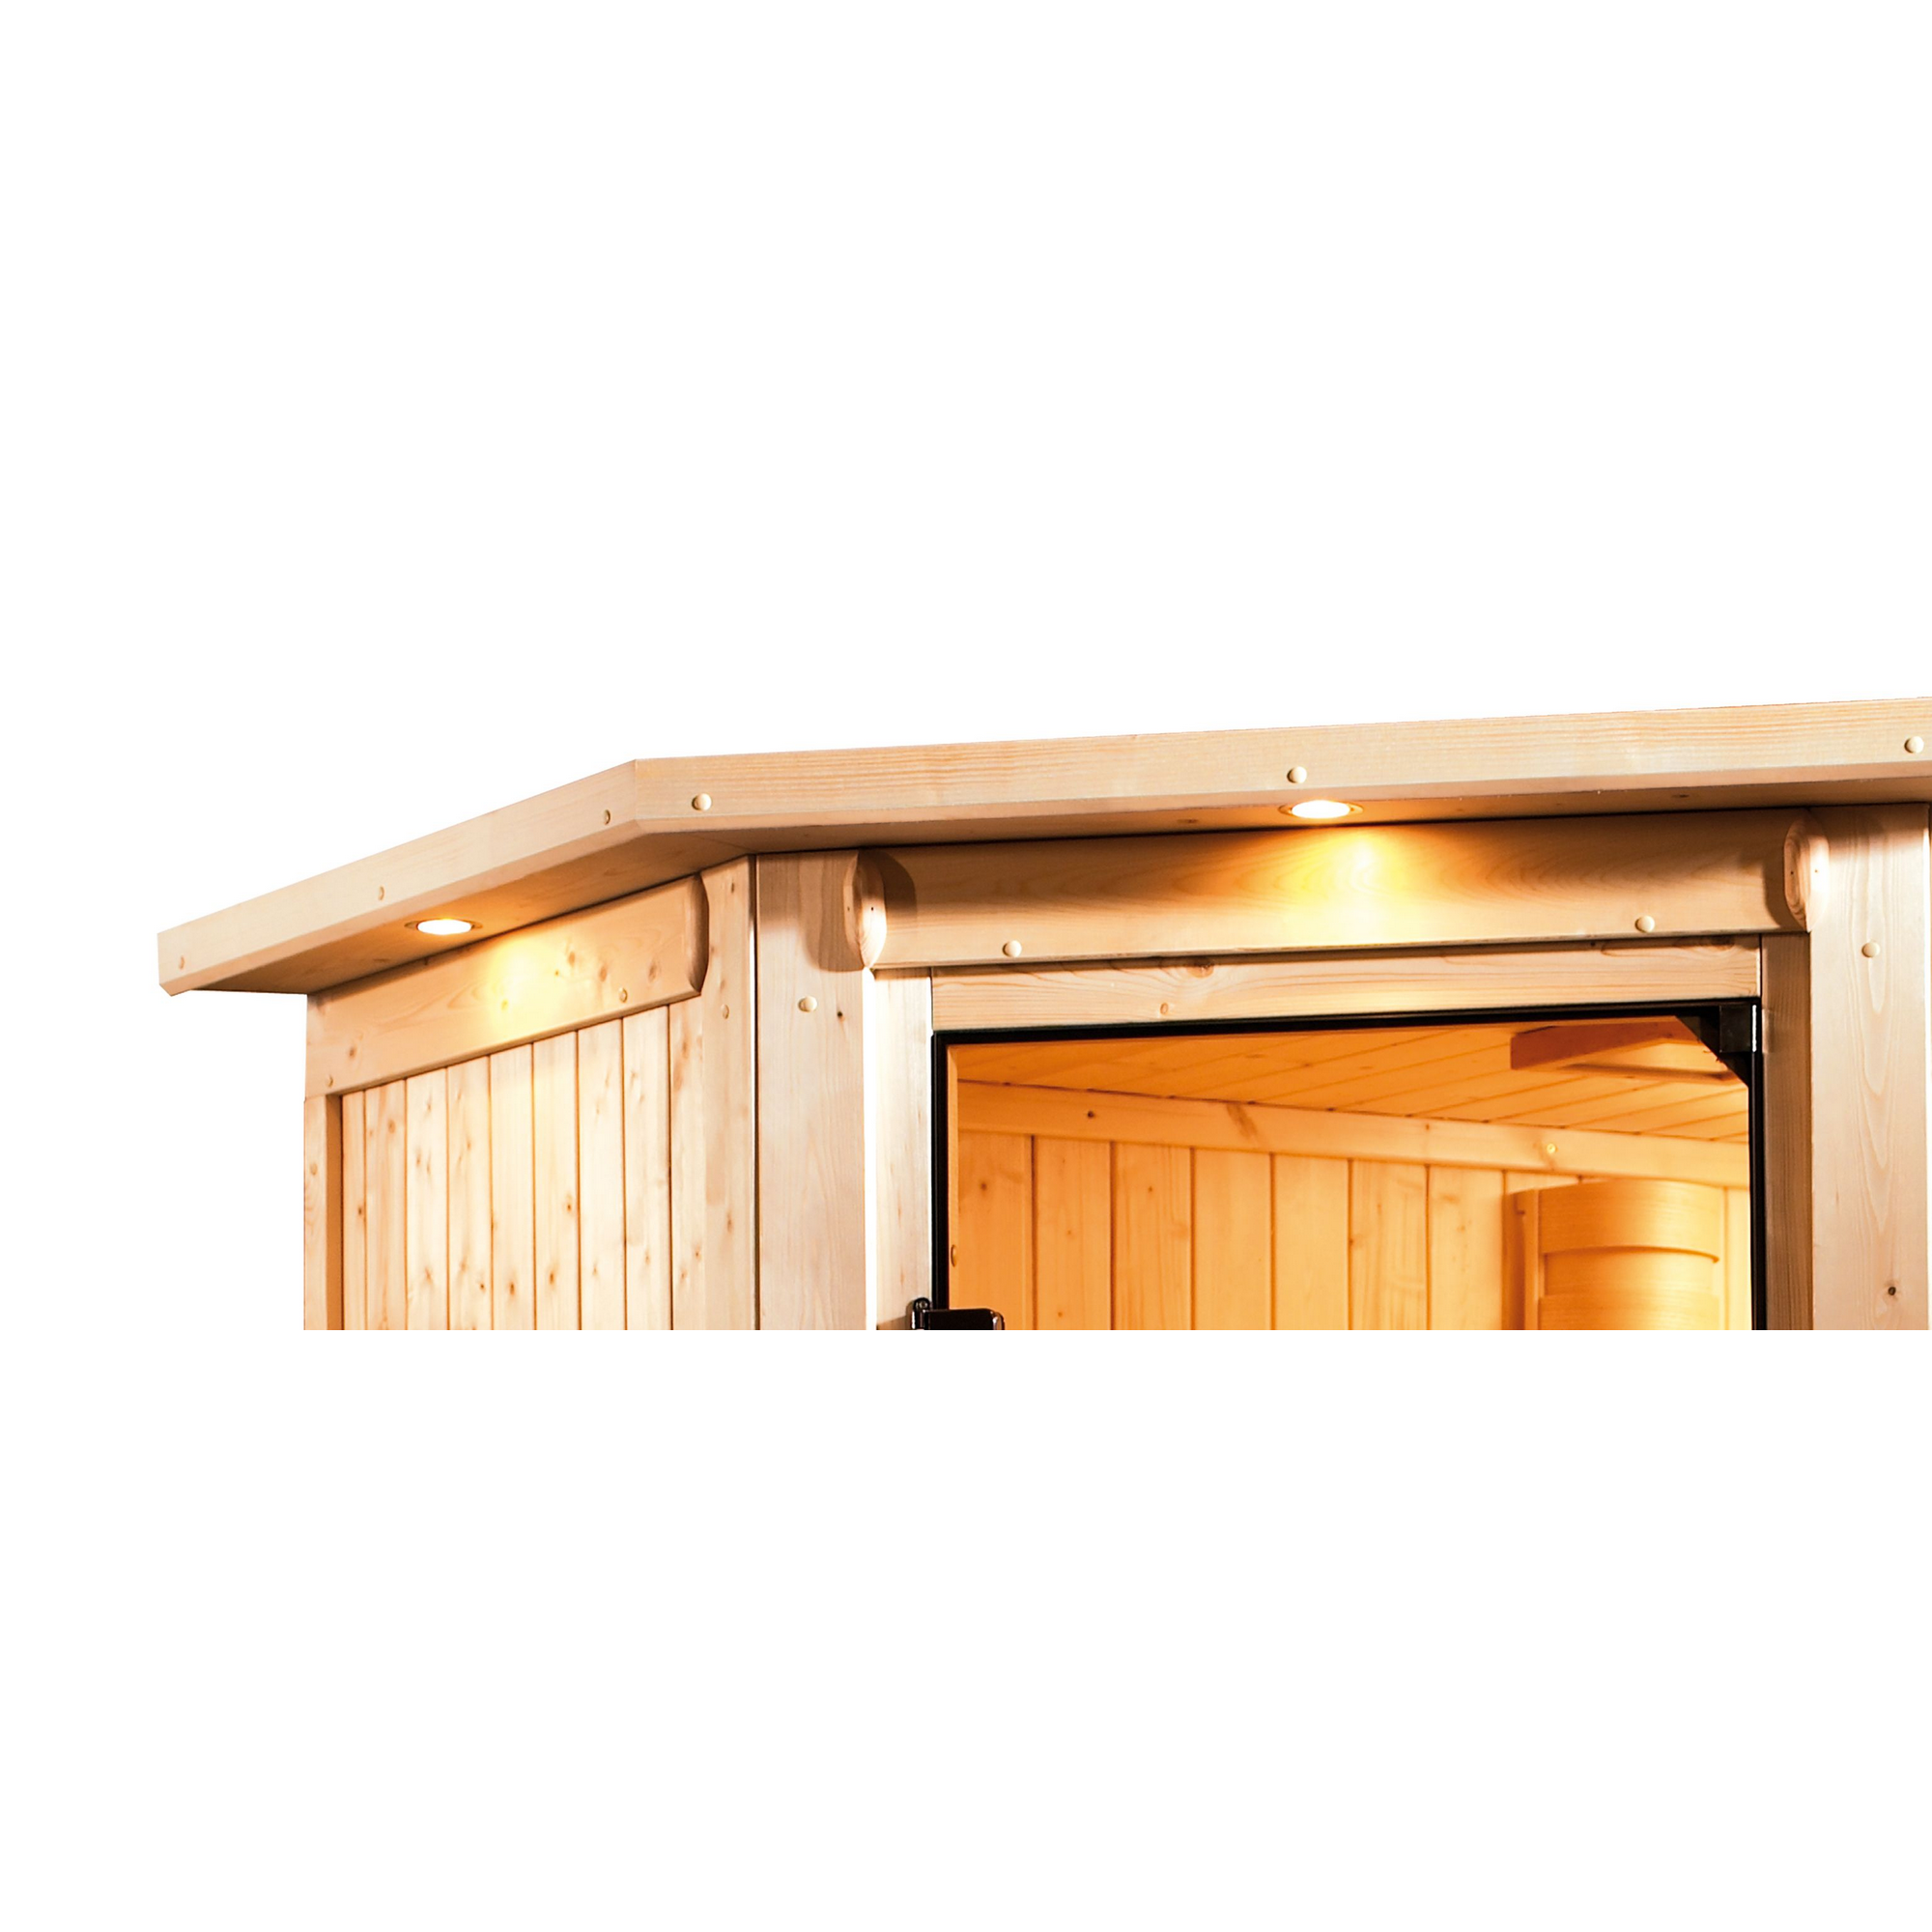 Elementsauna 'Carolina' naturbelassen mit Kranz und bronzierter Tür 3,6 kW Bio-Ofen externe Steuerung Easy 210 x 184 x 202 cm + product picture